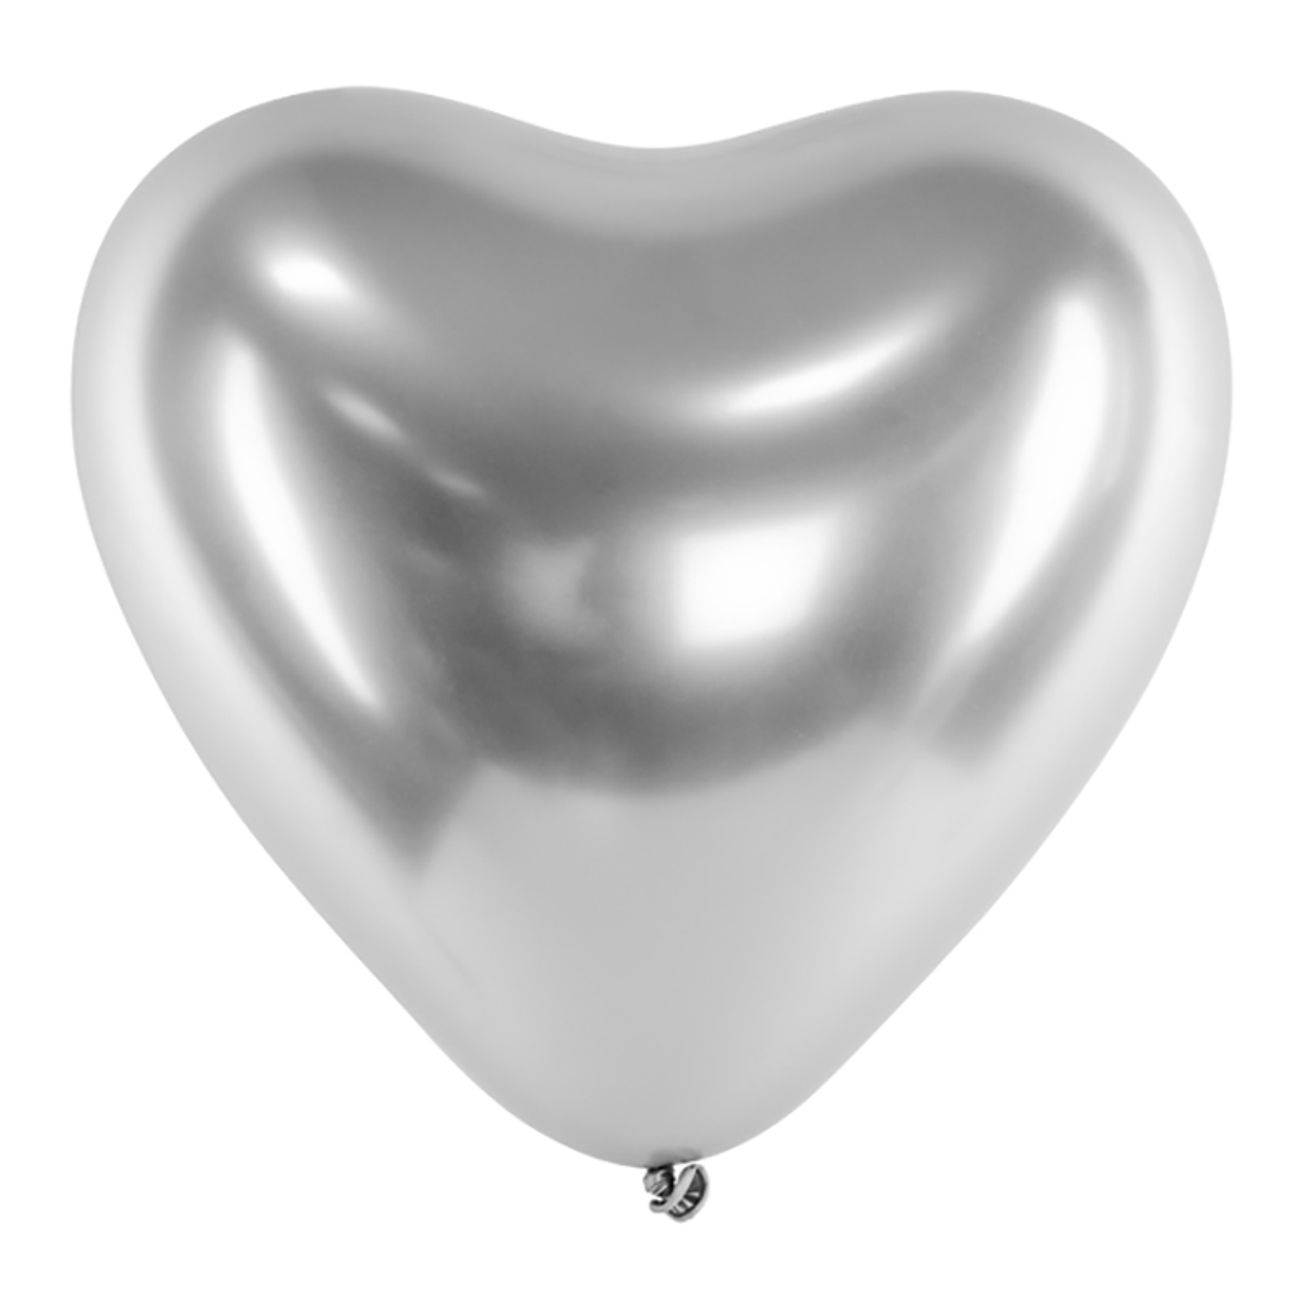 hjartballonger-silvermetallic-1